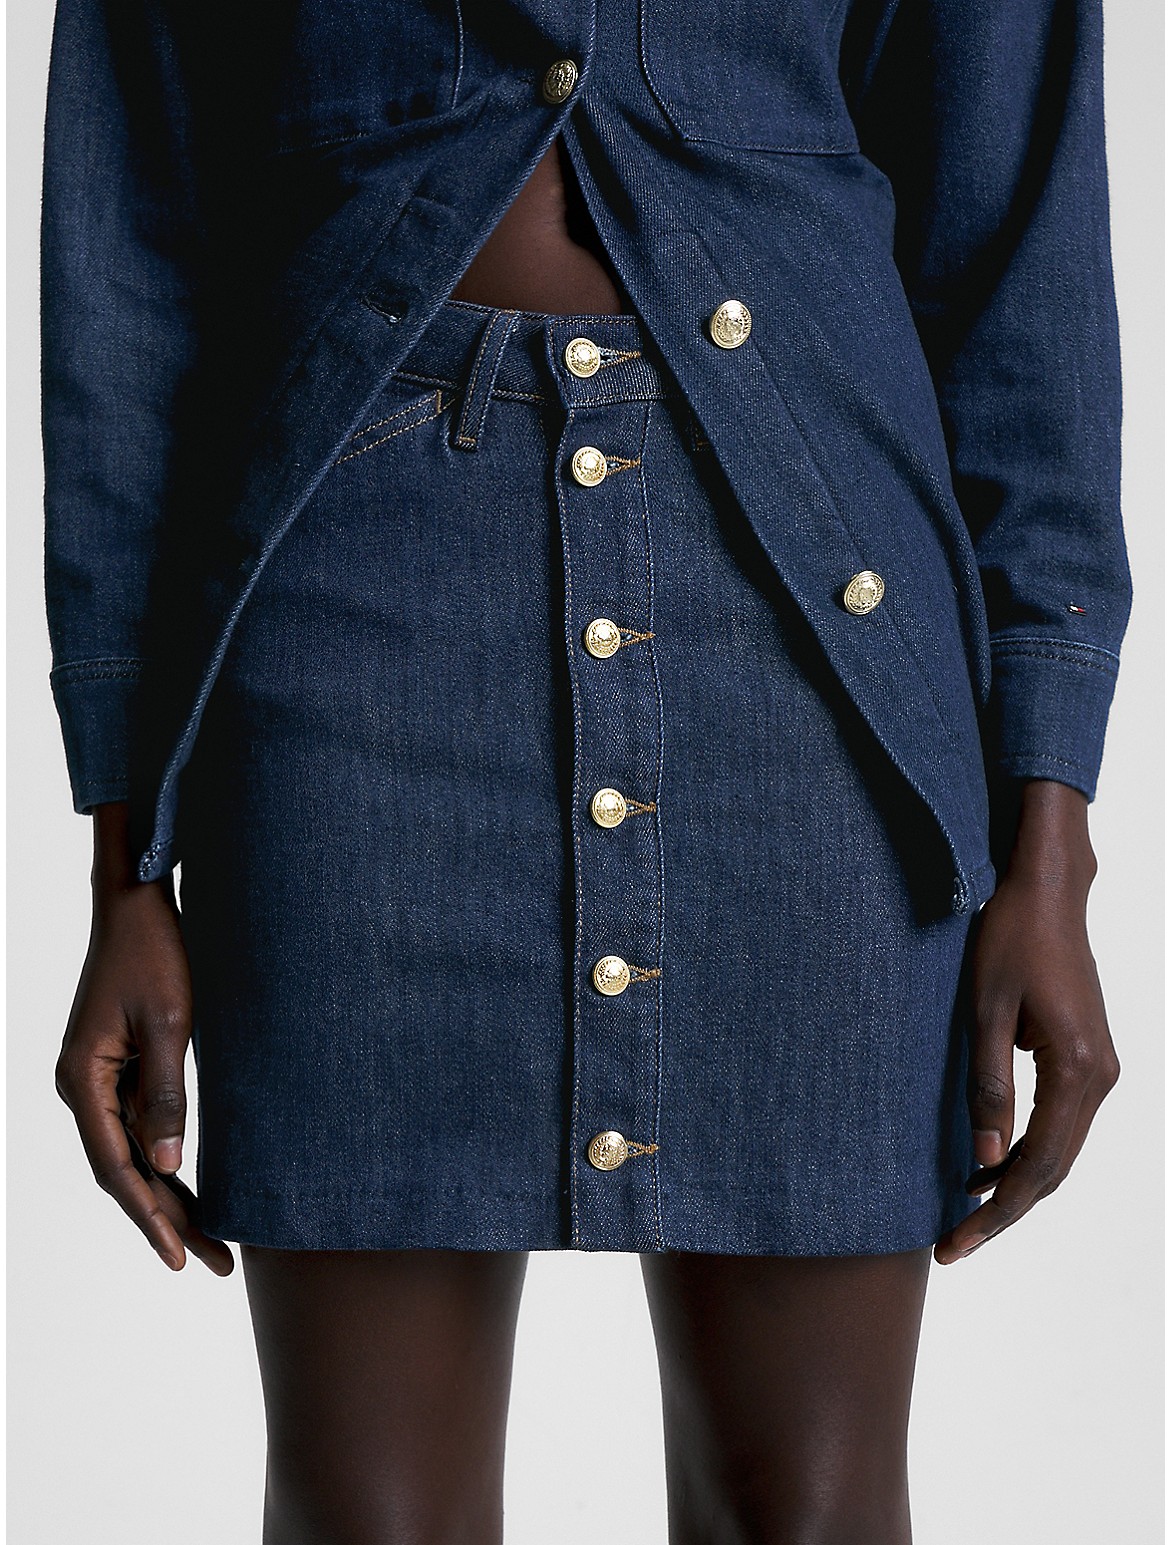 Tommy Hilfiger Women's High Waist Button Front Denim Mini Skirt - Blue - 6